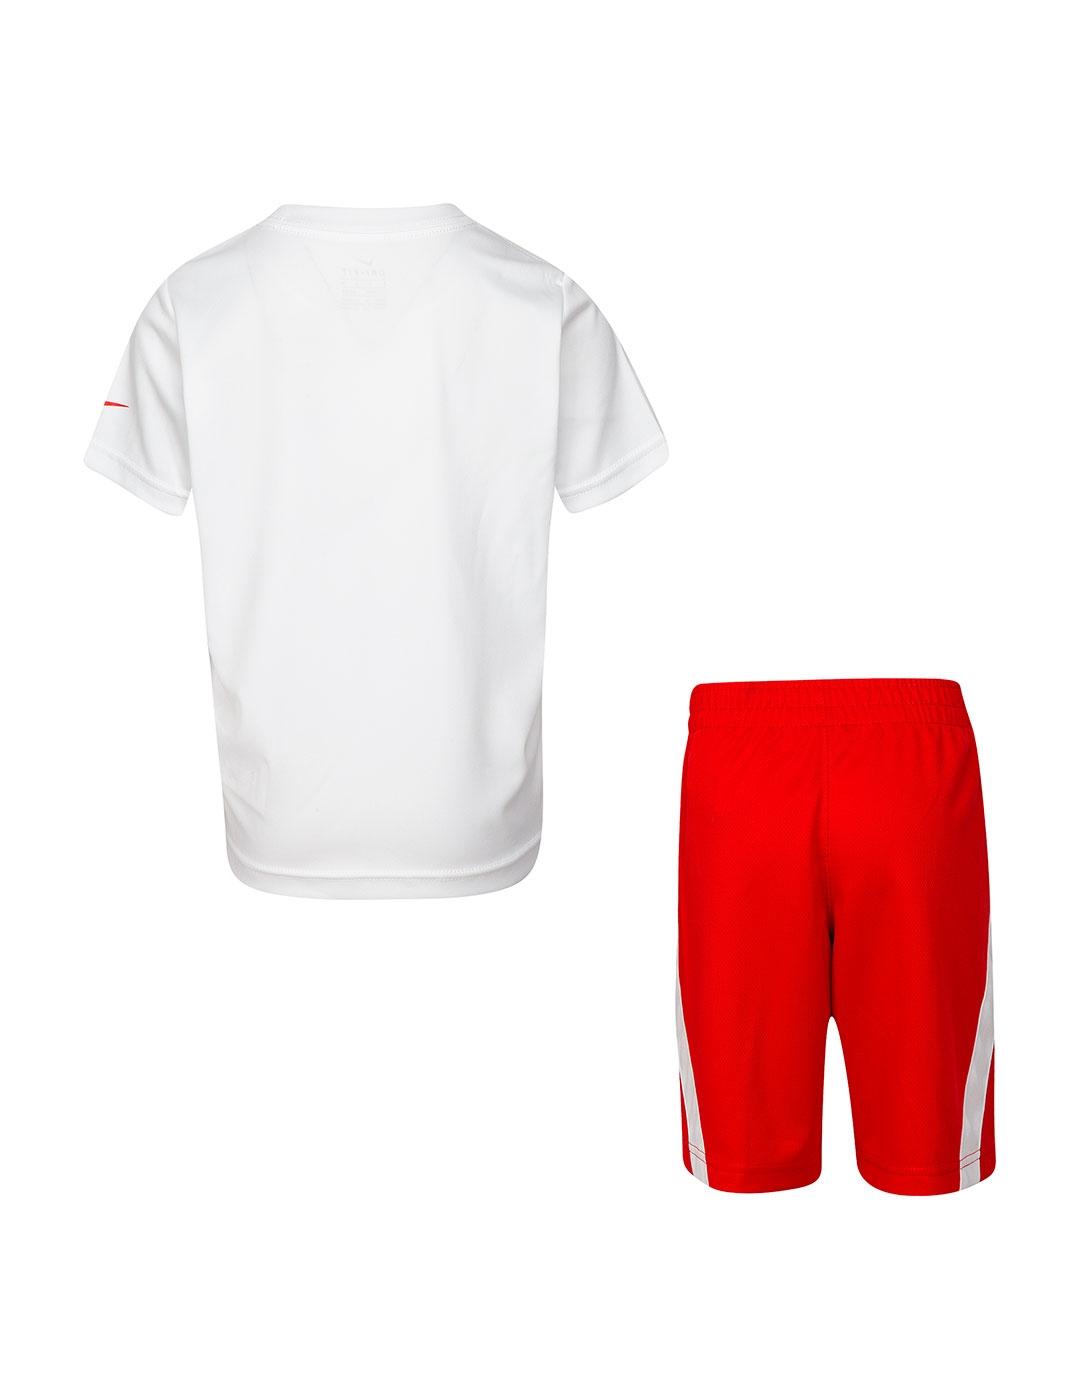 Conjunto Niño Nike Set Blanco Rojo